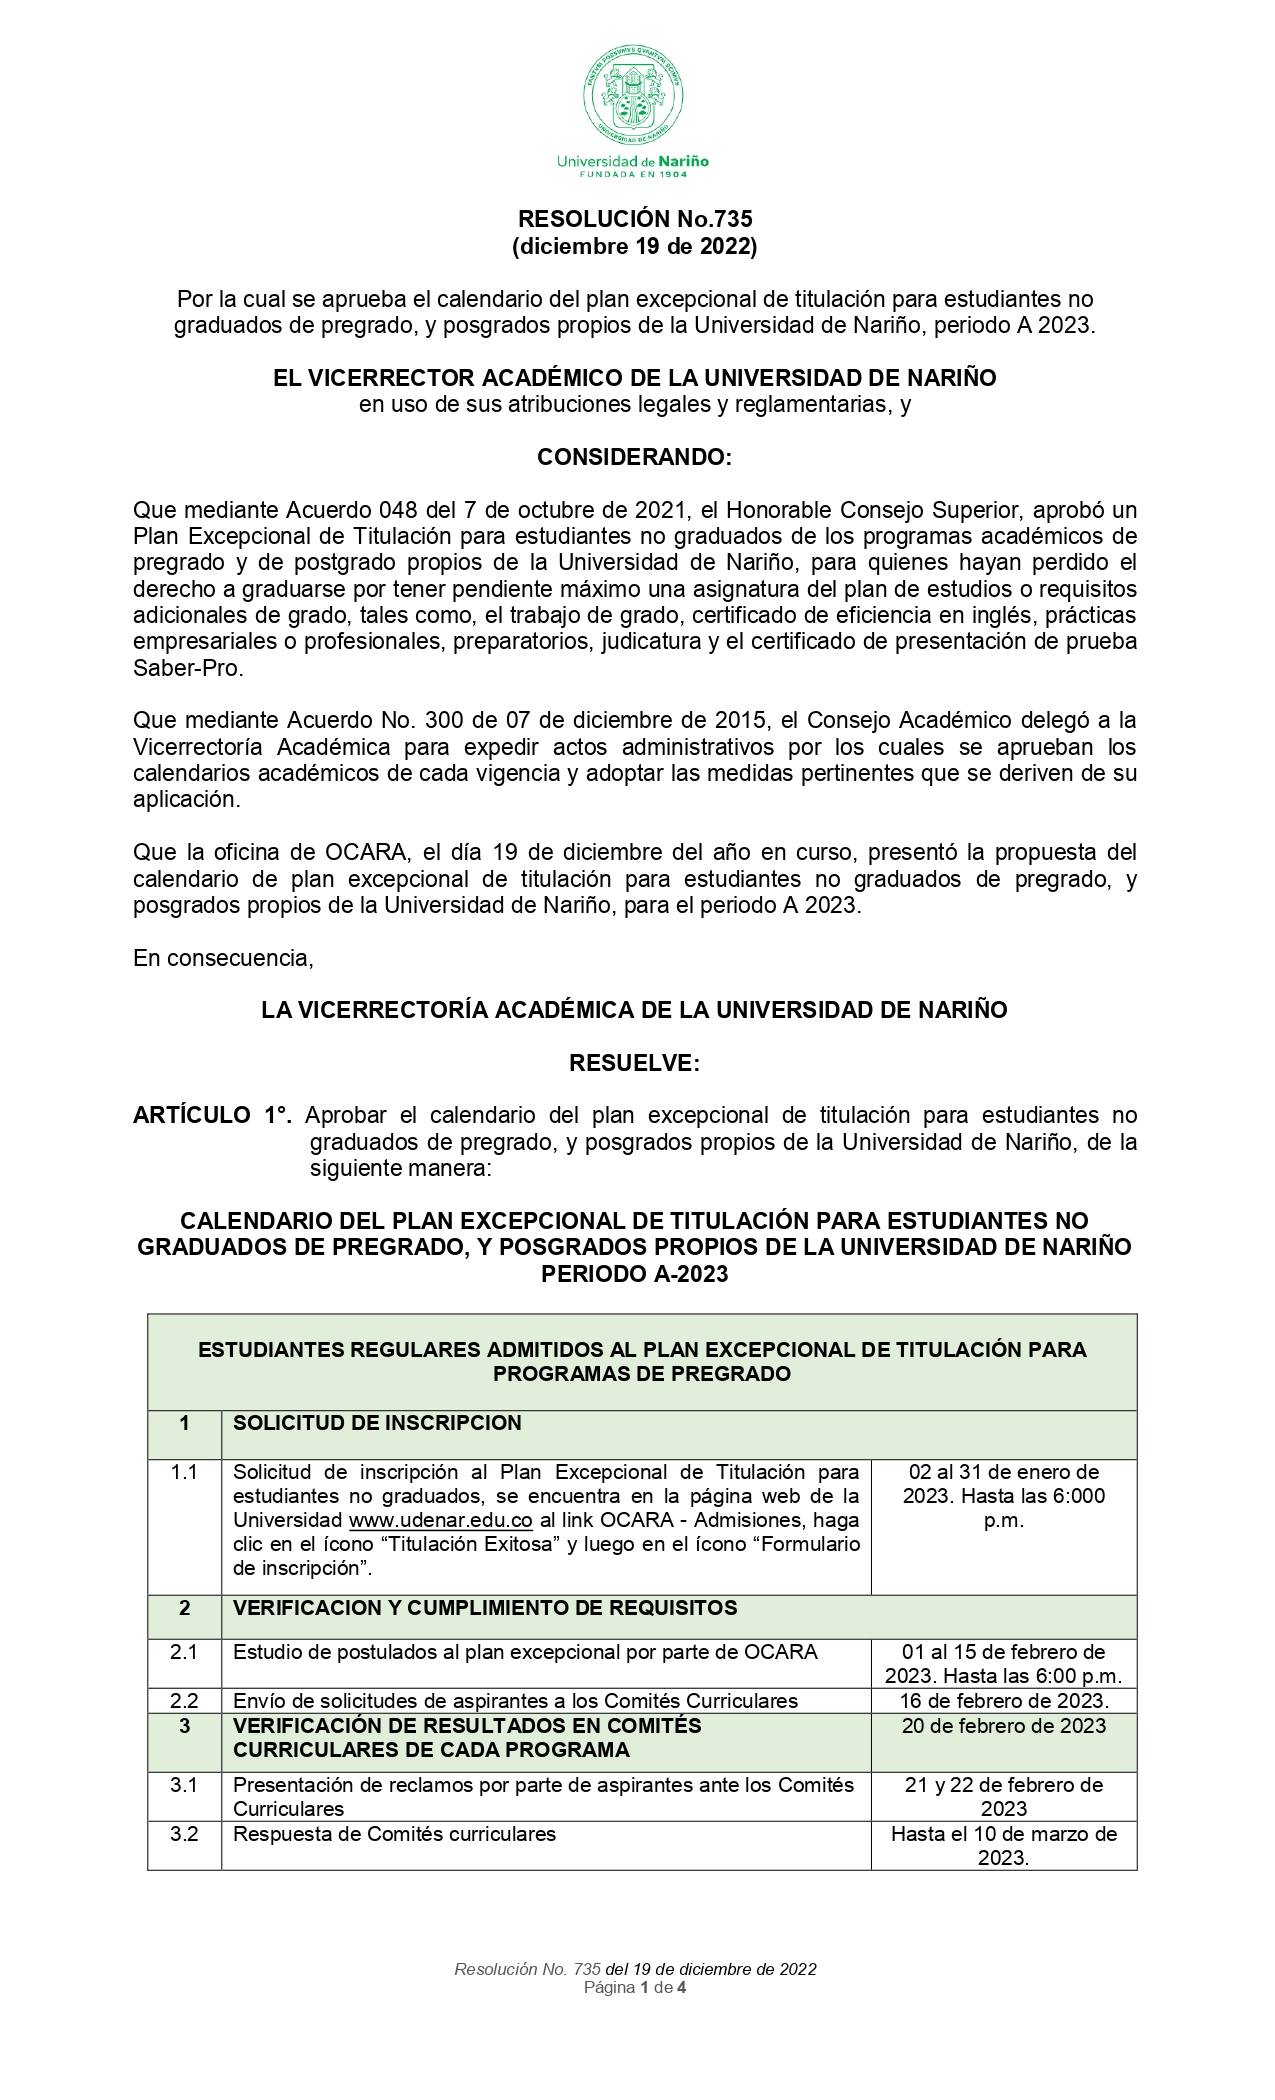 resolucion_no_735_2022_calendario_plan_excepcional_de_titulaciónA2023_page-0001